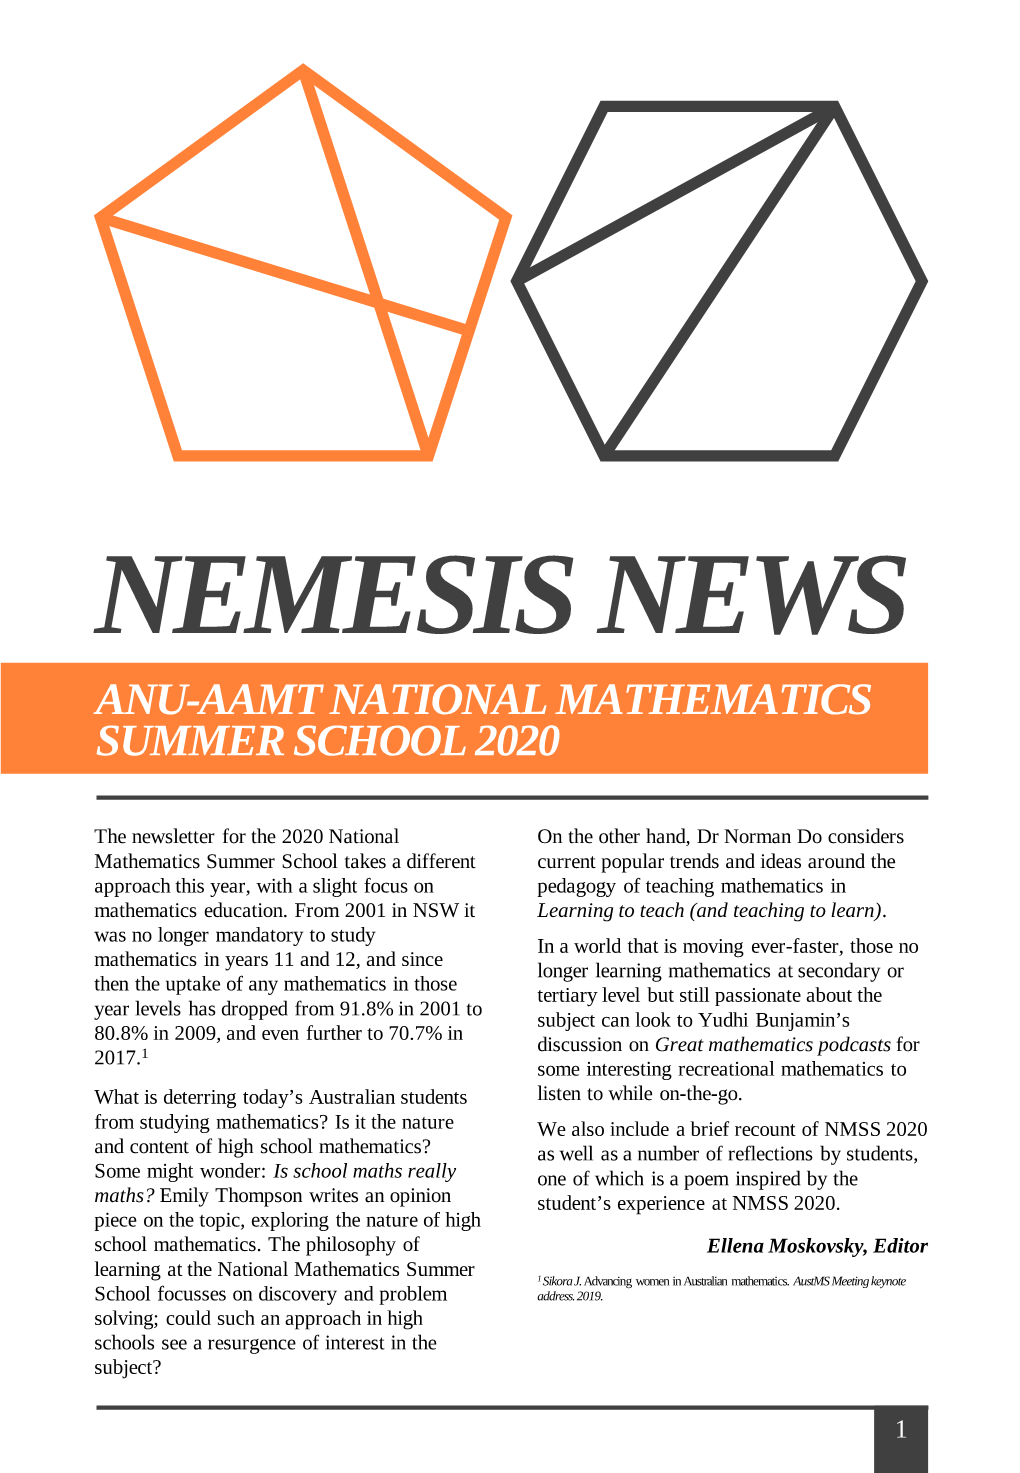 Nemesis News 2020